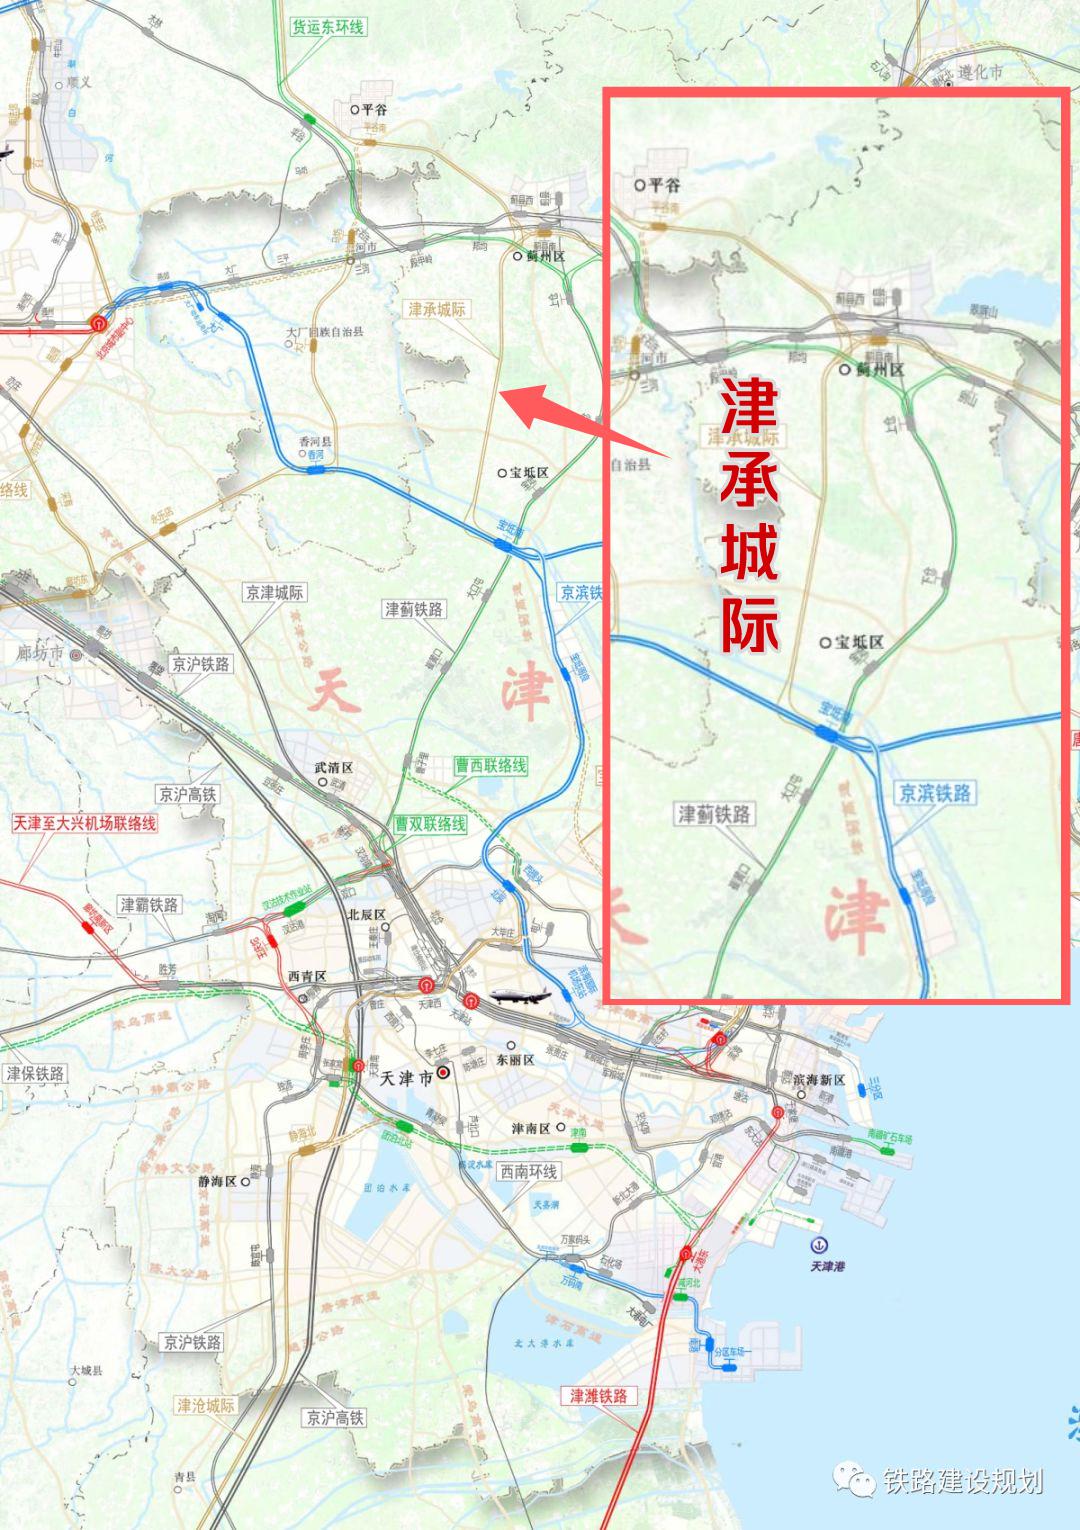 目前项目已进入可研阶段,推荐方案从京唐城际铁路宝坻南站引出,经